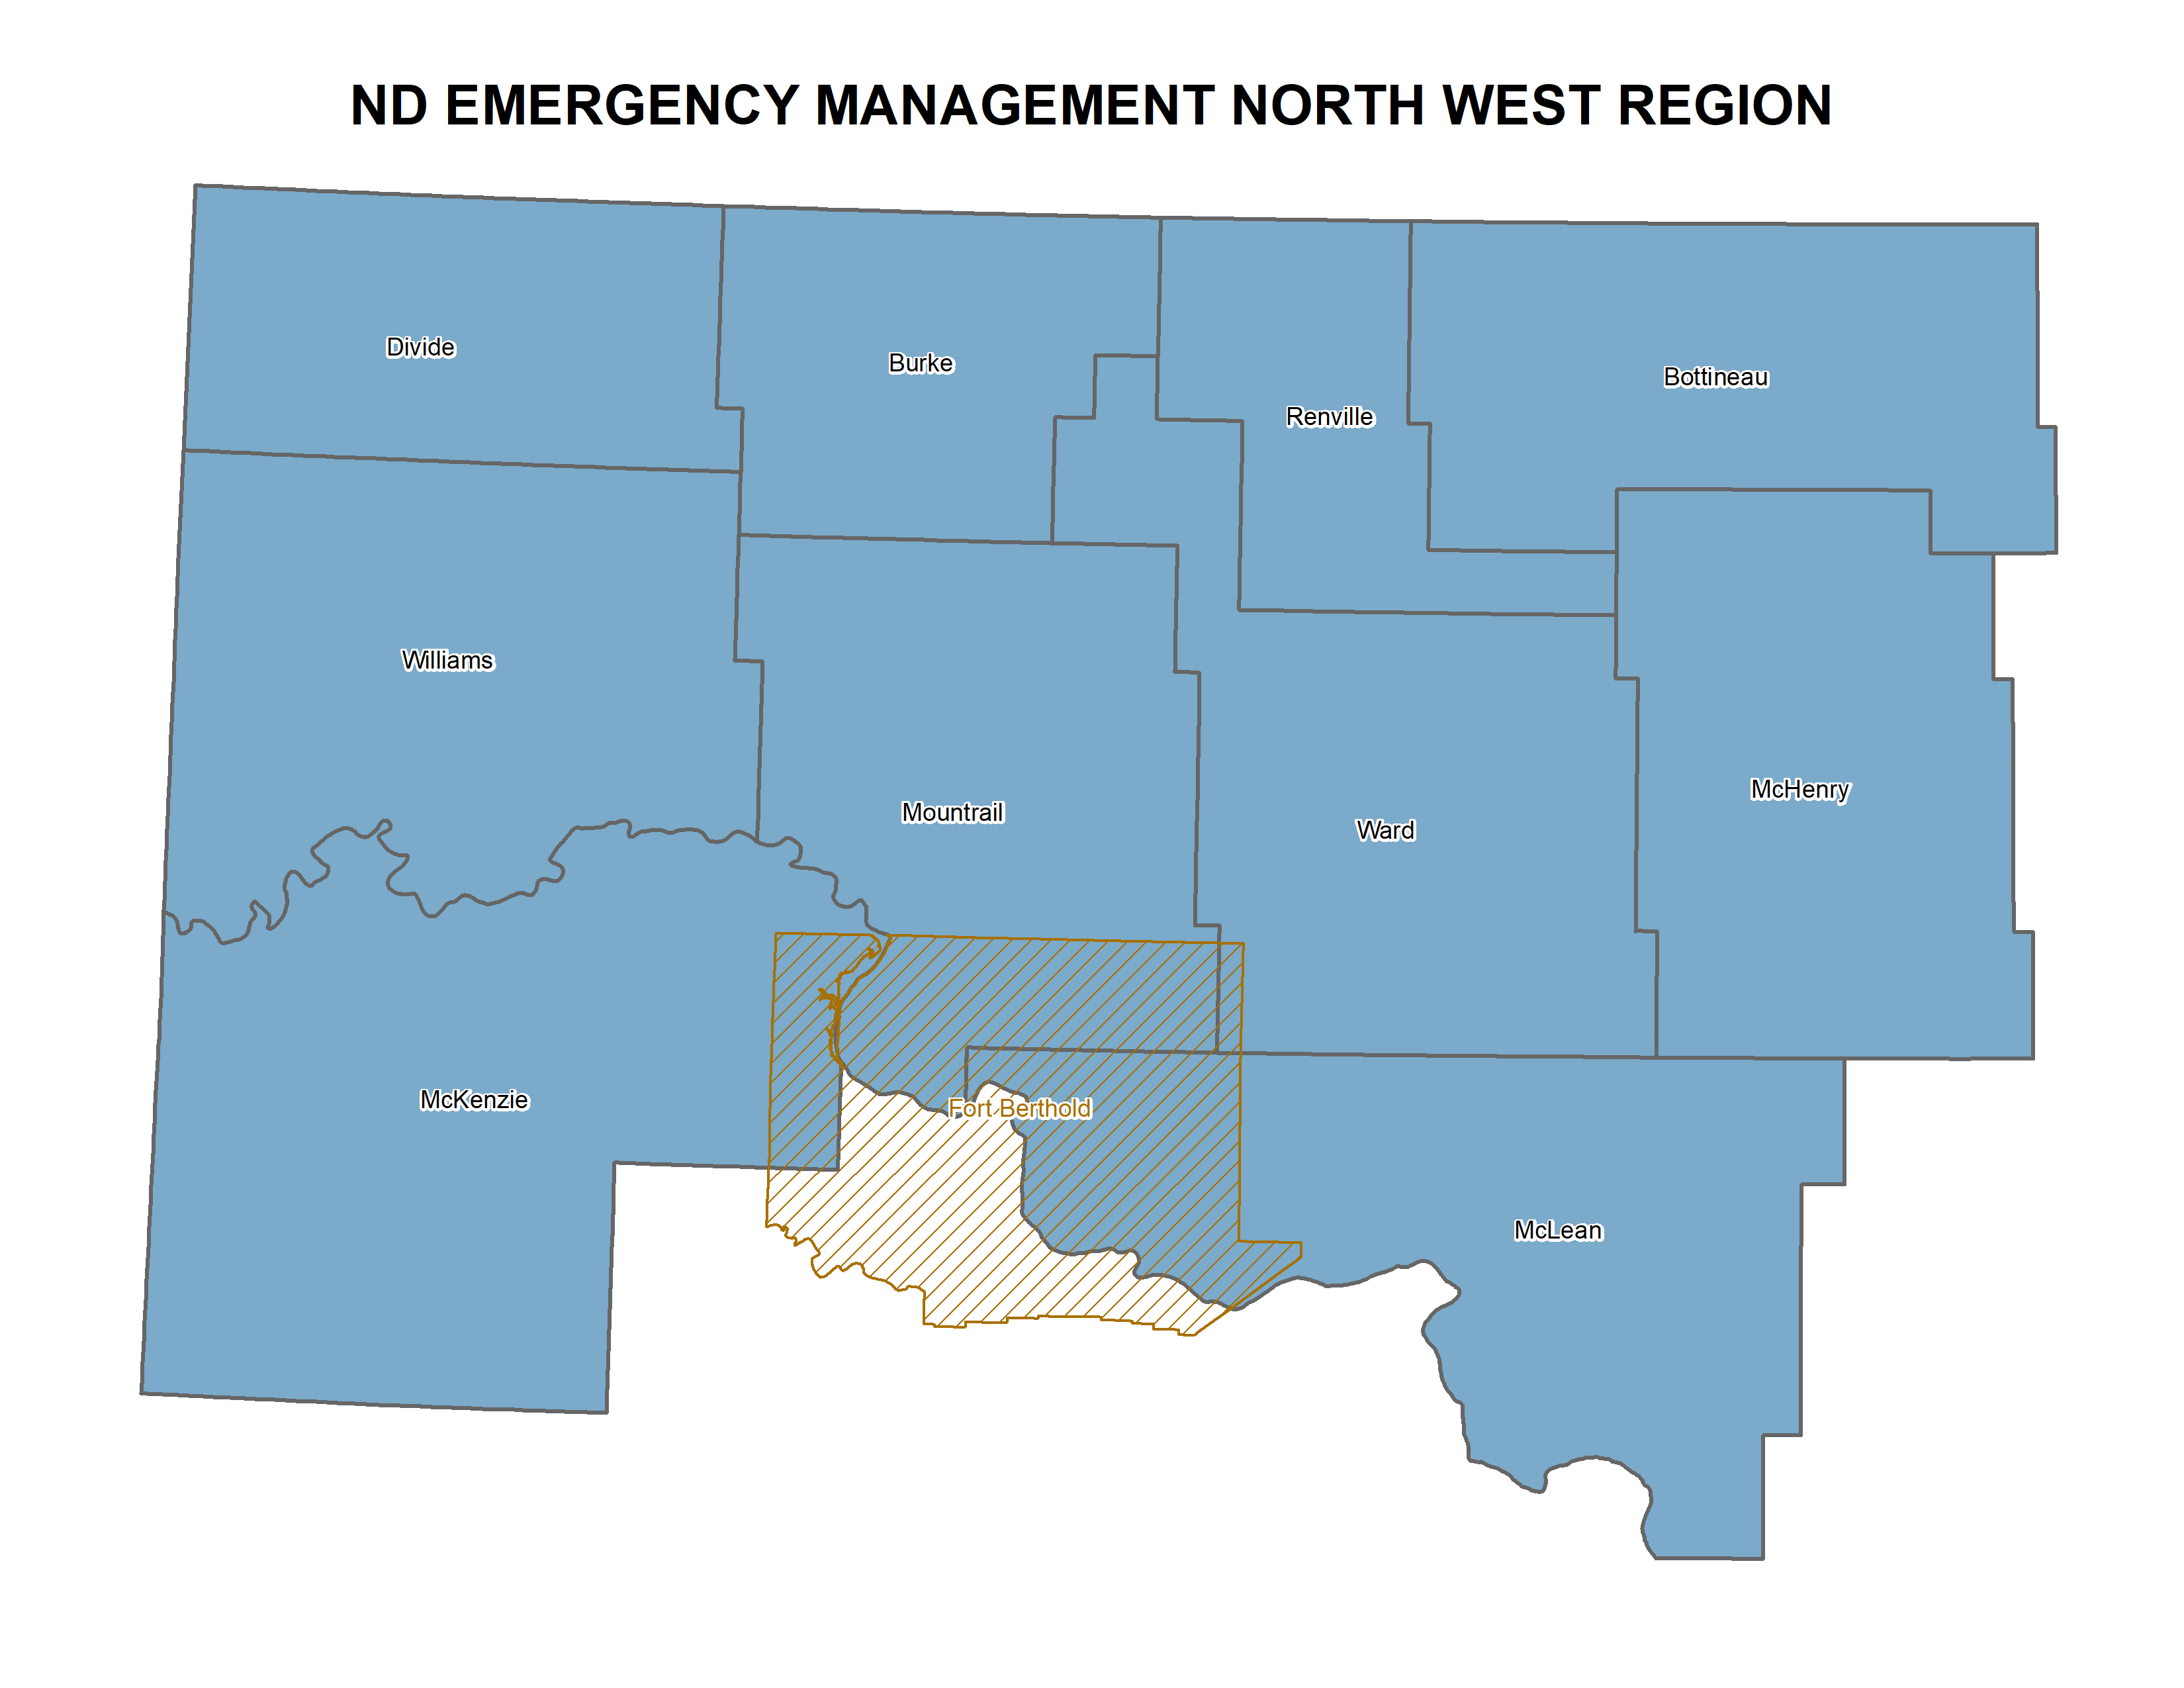 Northwest ND Region